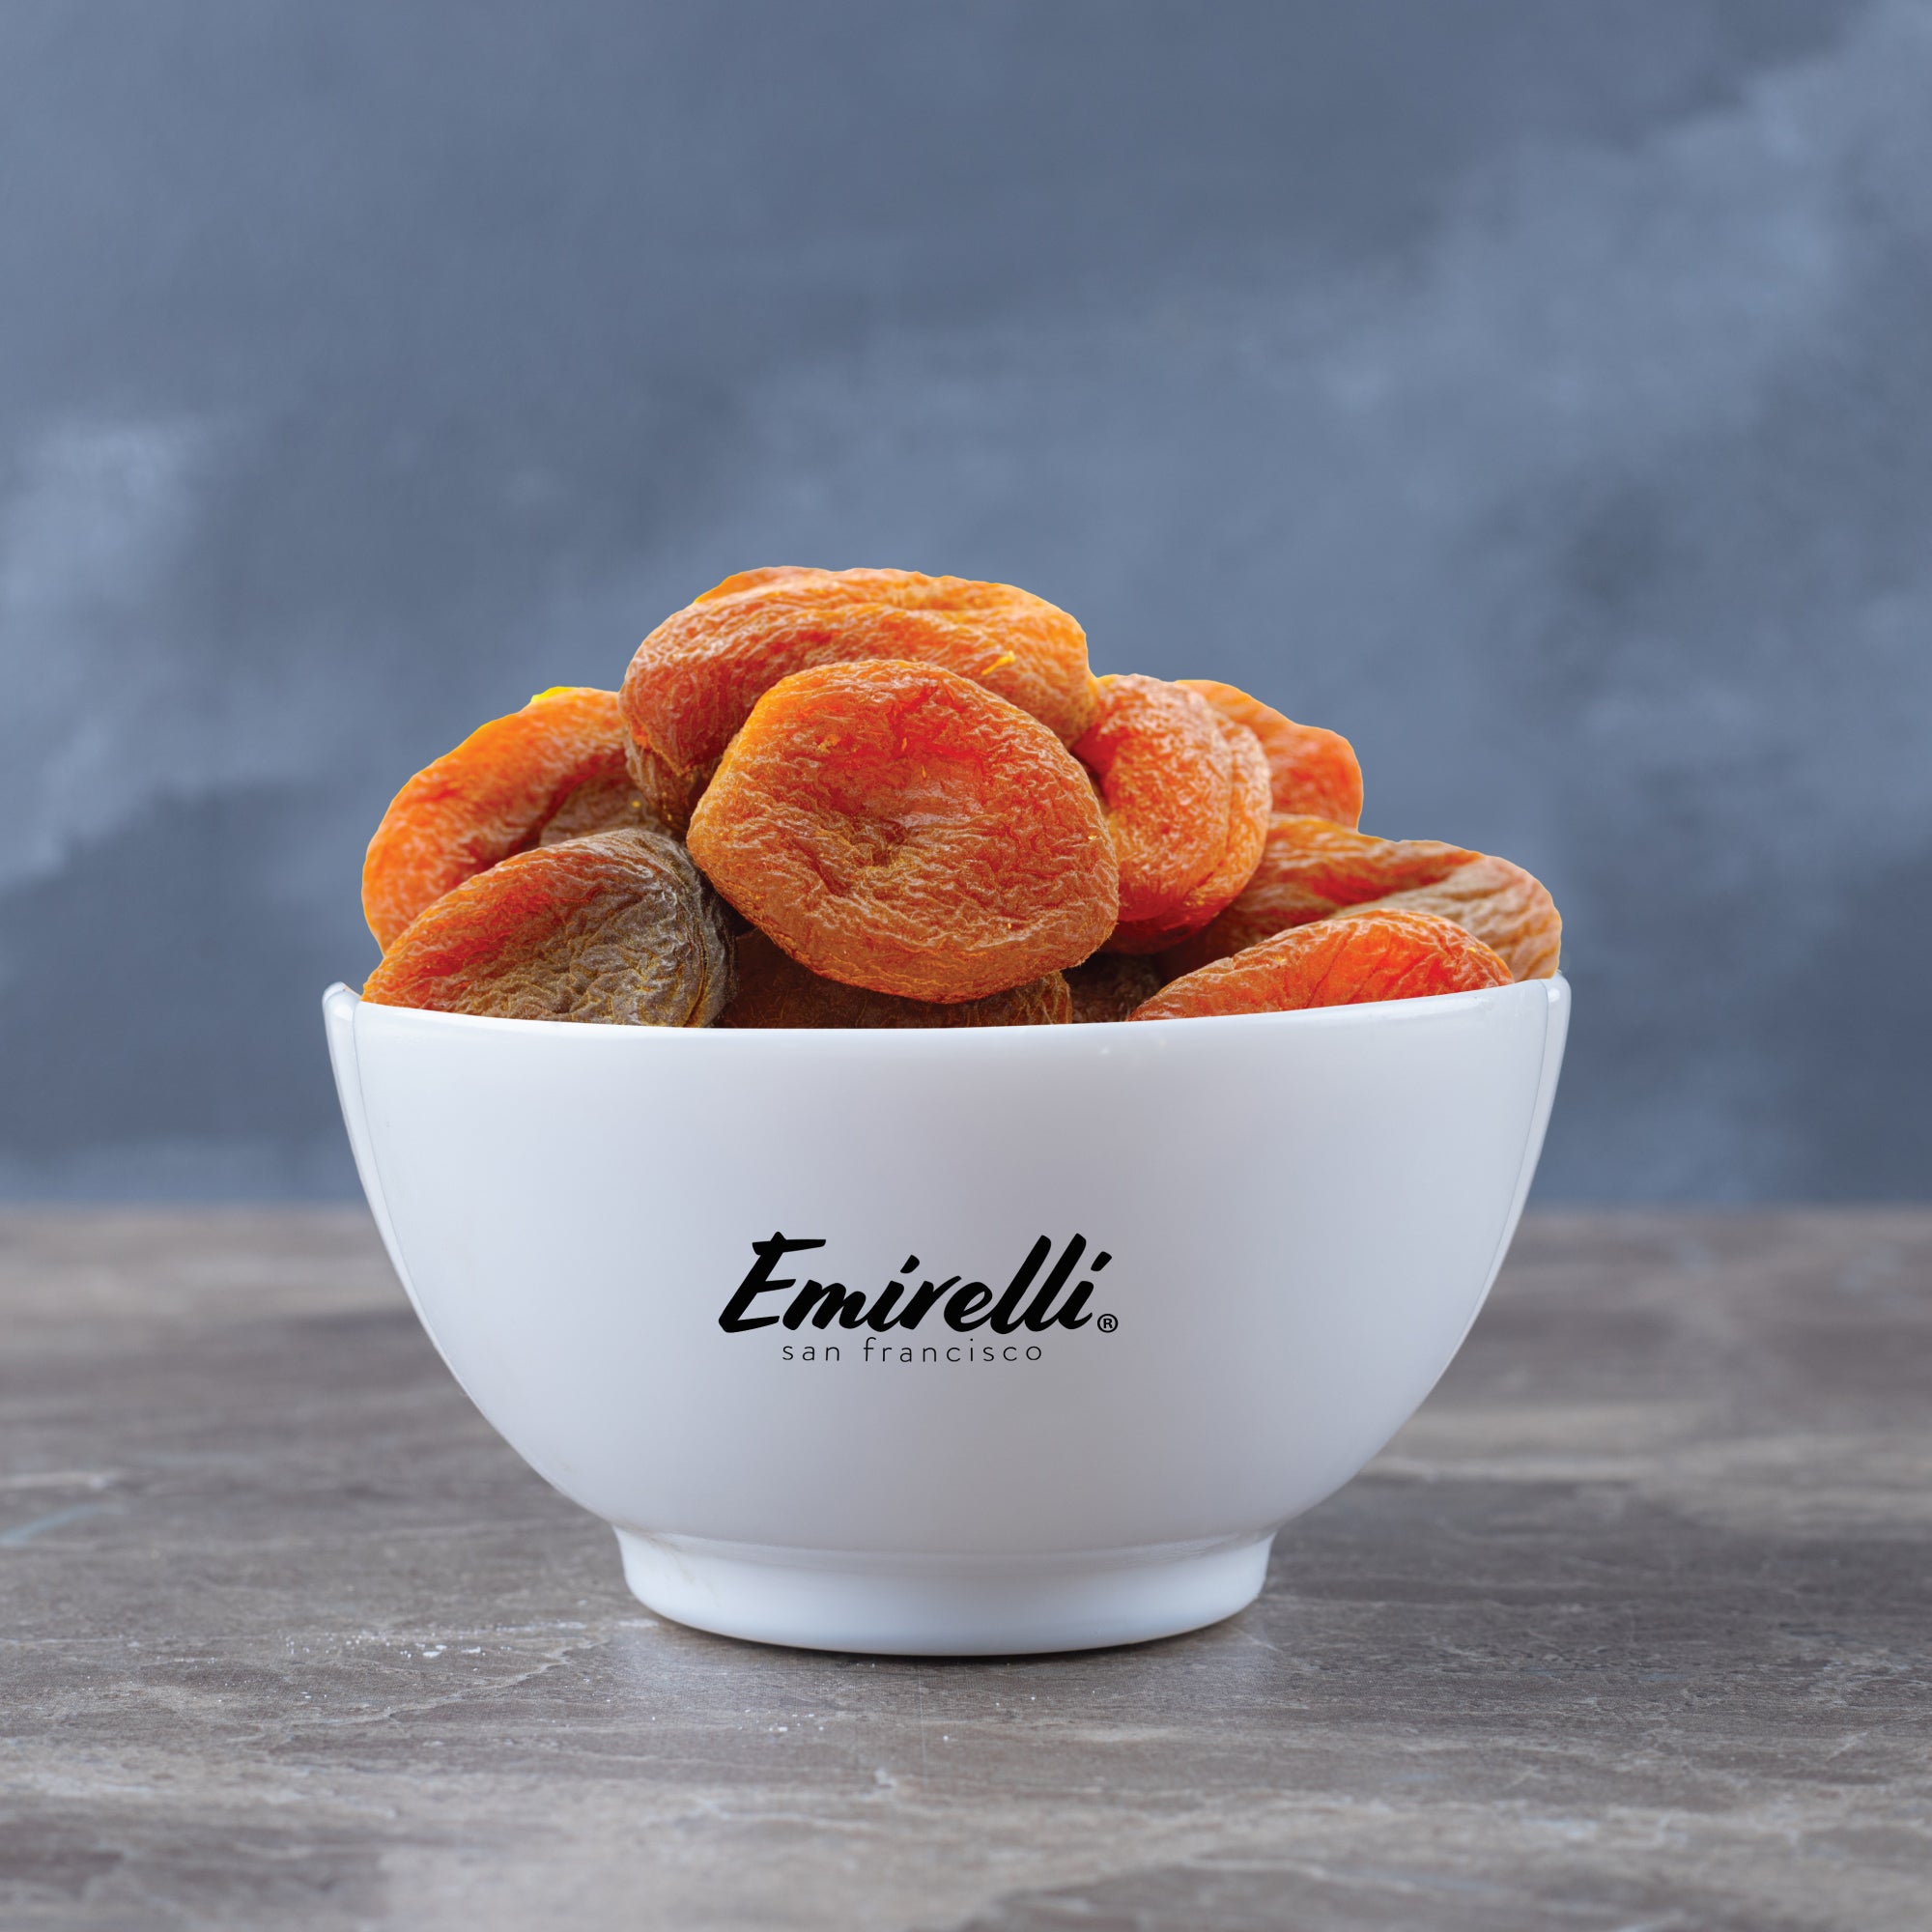 Emirelli MIX Dried Fruits - Organic Figs, Organic Apricots, Organic Mulberries and Apricots